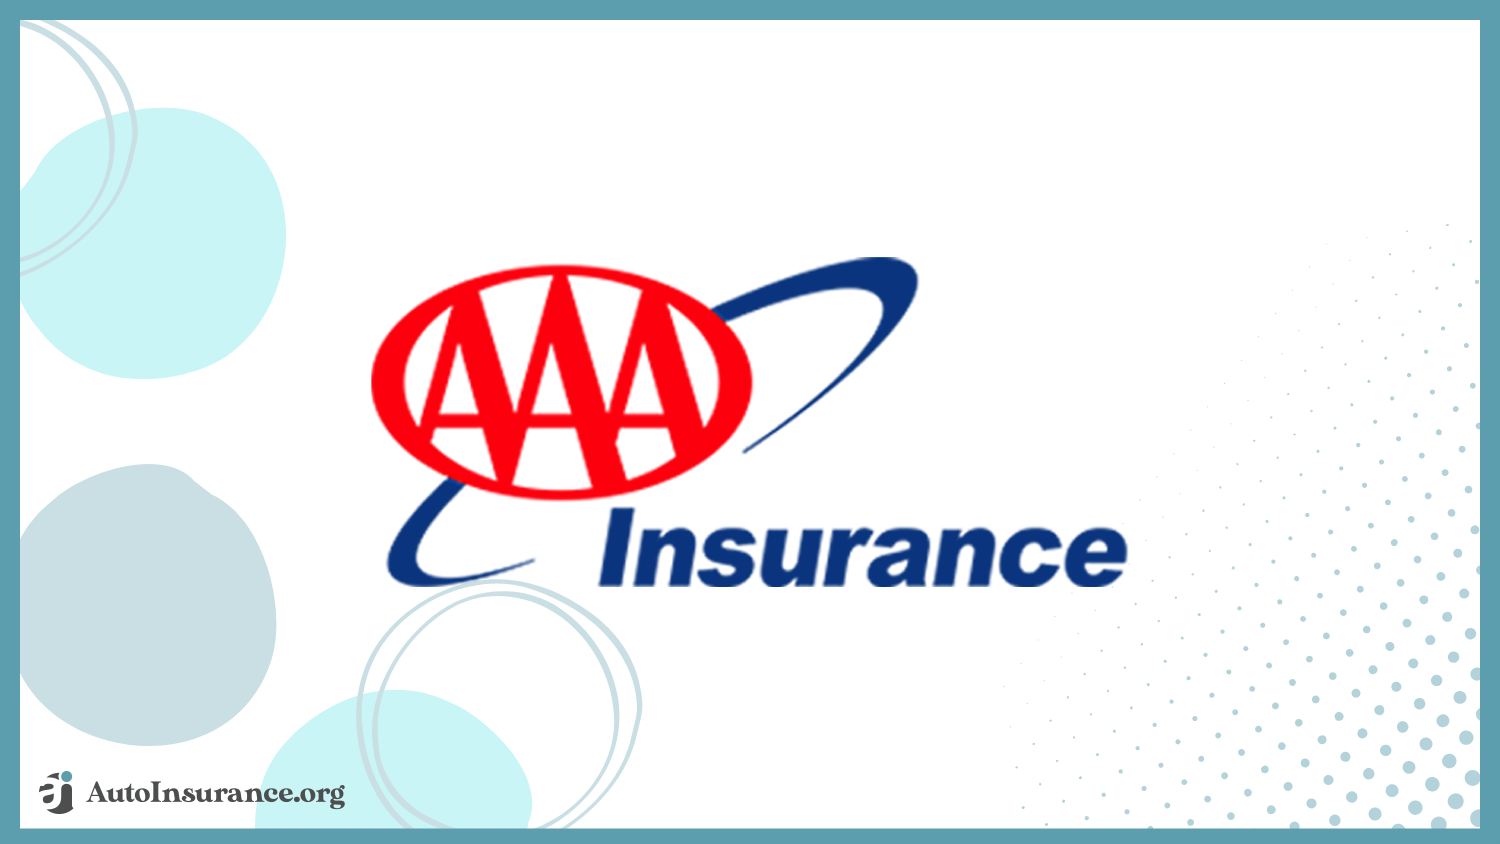 Best Tesla Model Y Auto Insurance: AAA